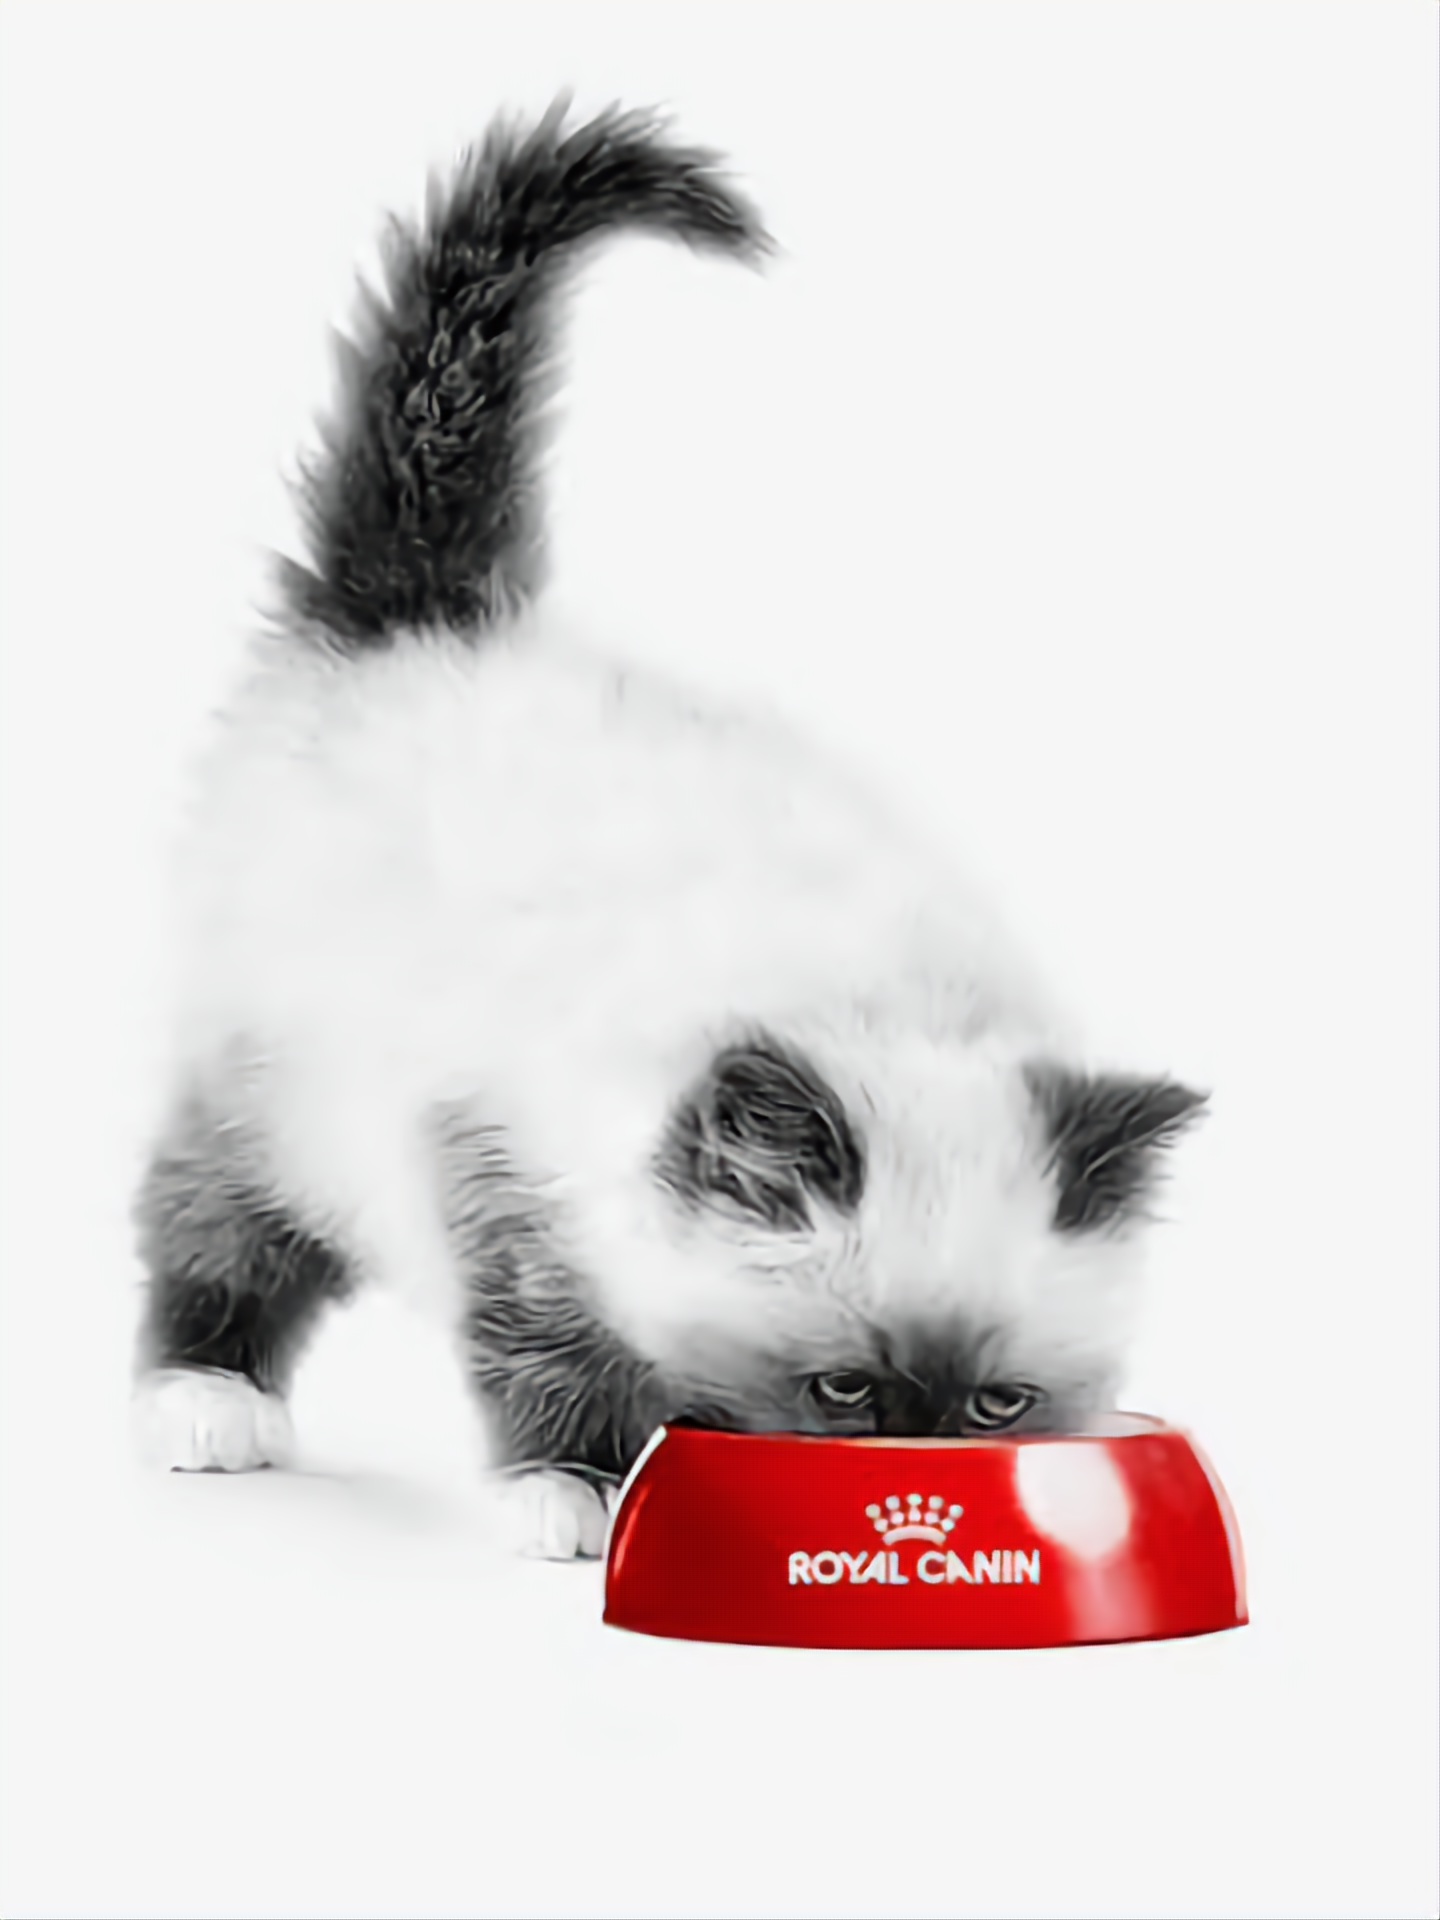 Royal Canin Hạt cho Mèo SỎI THẬN URINARY S/O (Dry Cat Food)